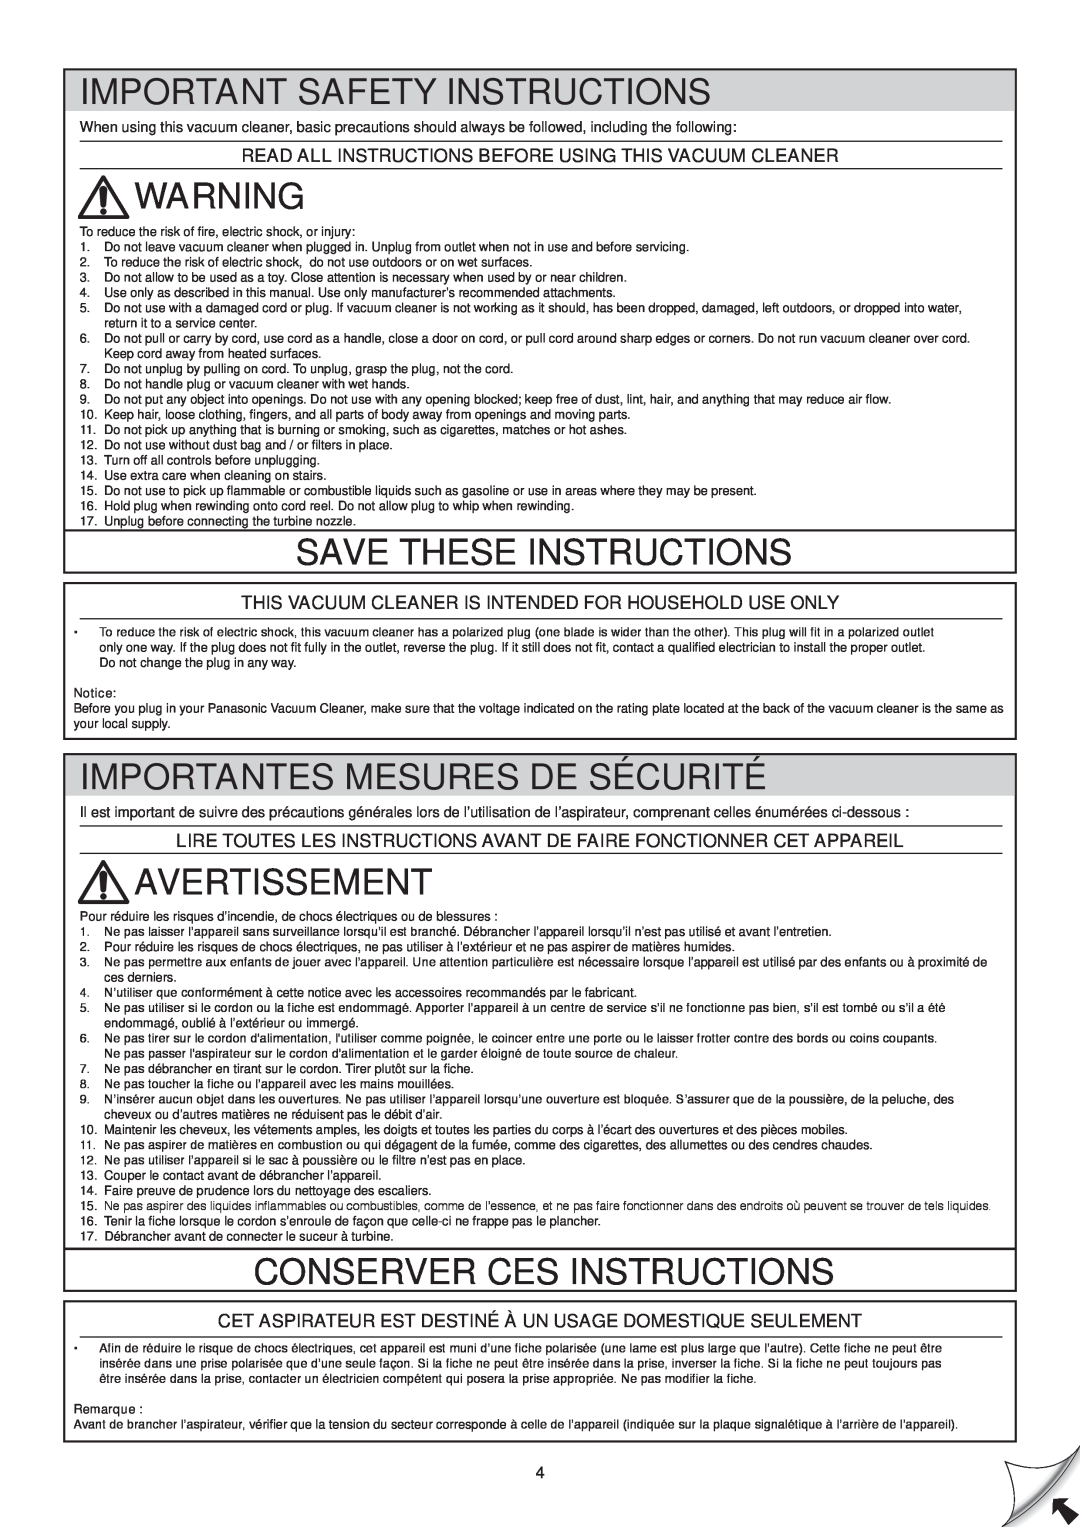 Panasonic Mccl485 Important Safety Instructions, Save These Instructions, Importantes Mesures De Sécurité, Avertissement 